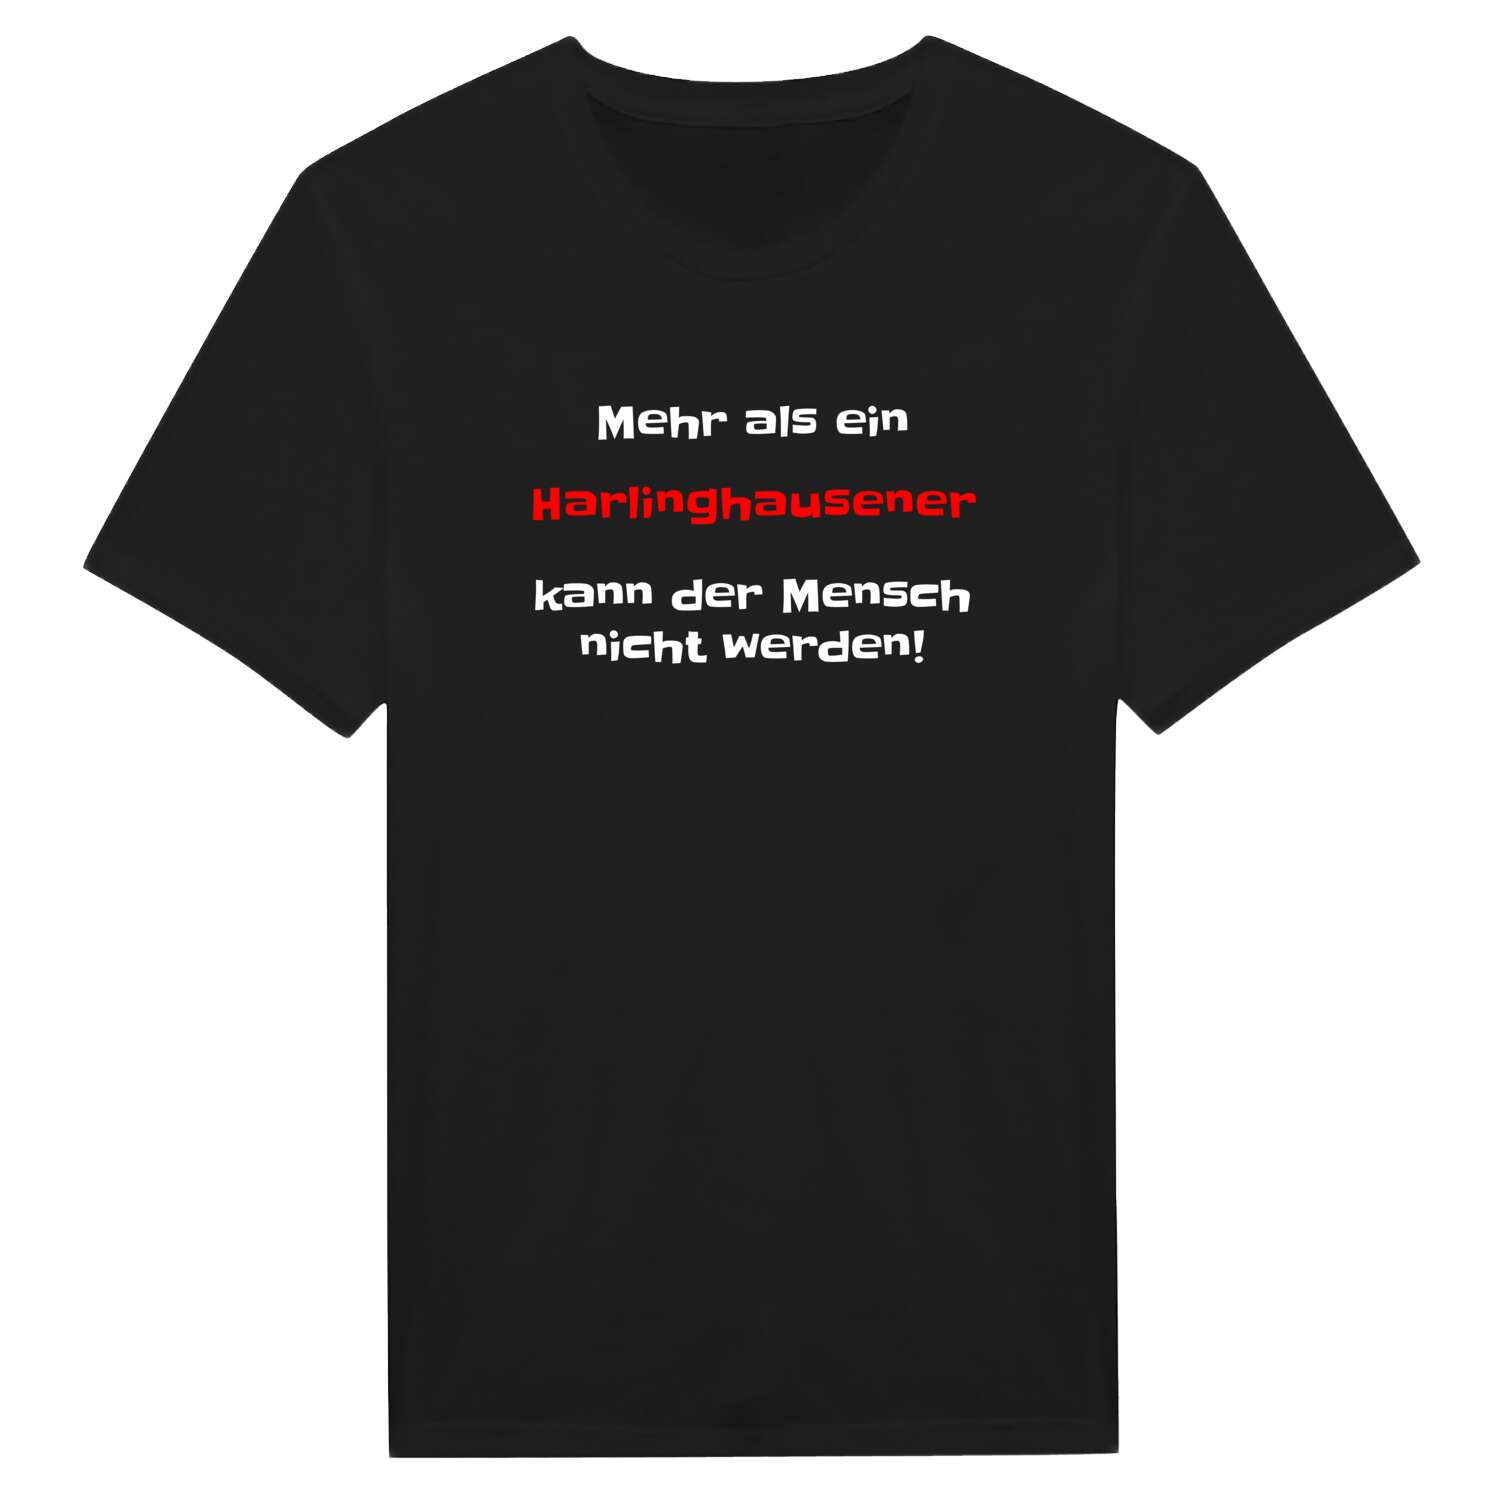 Harlinghausen T-Shirt »Mehr als ein«